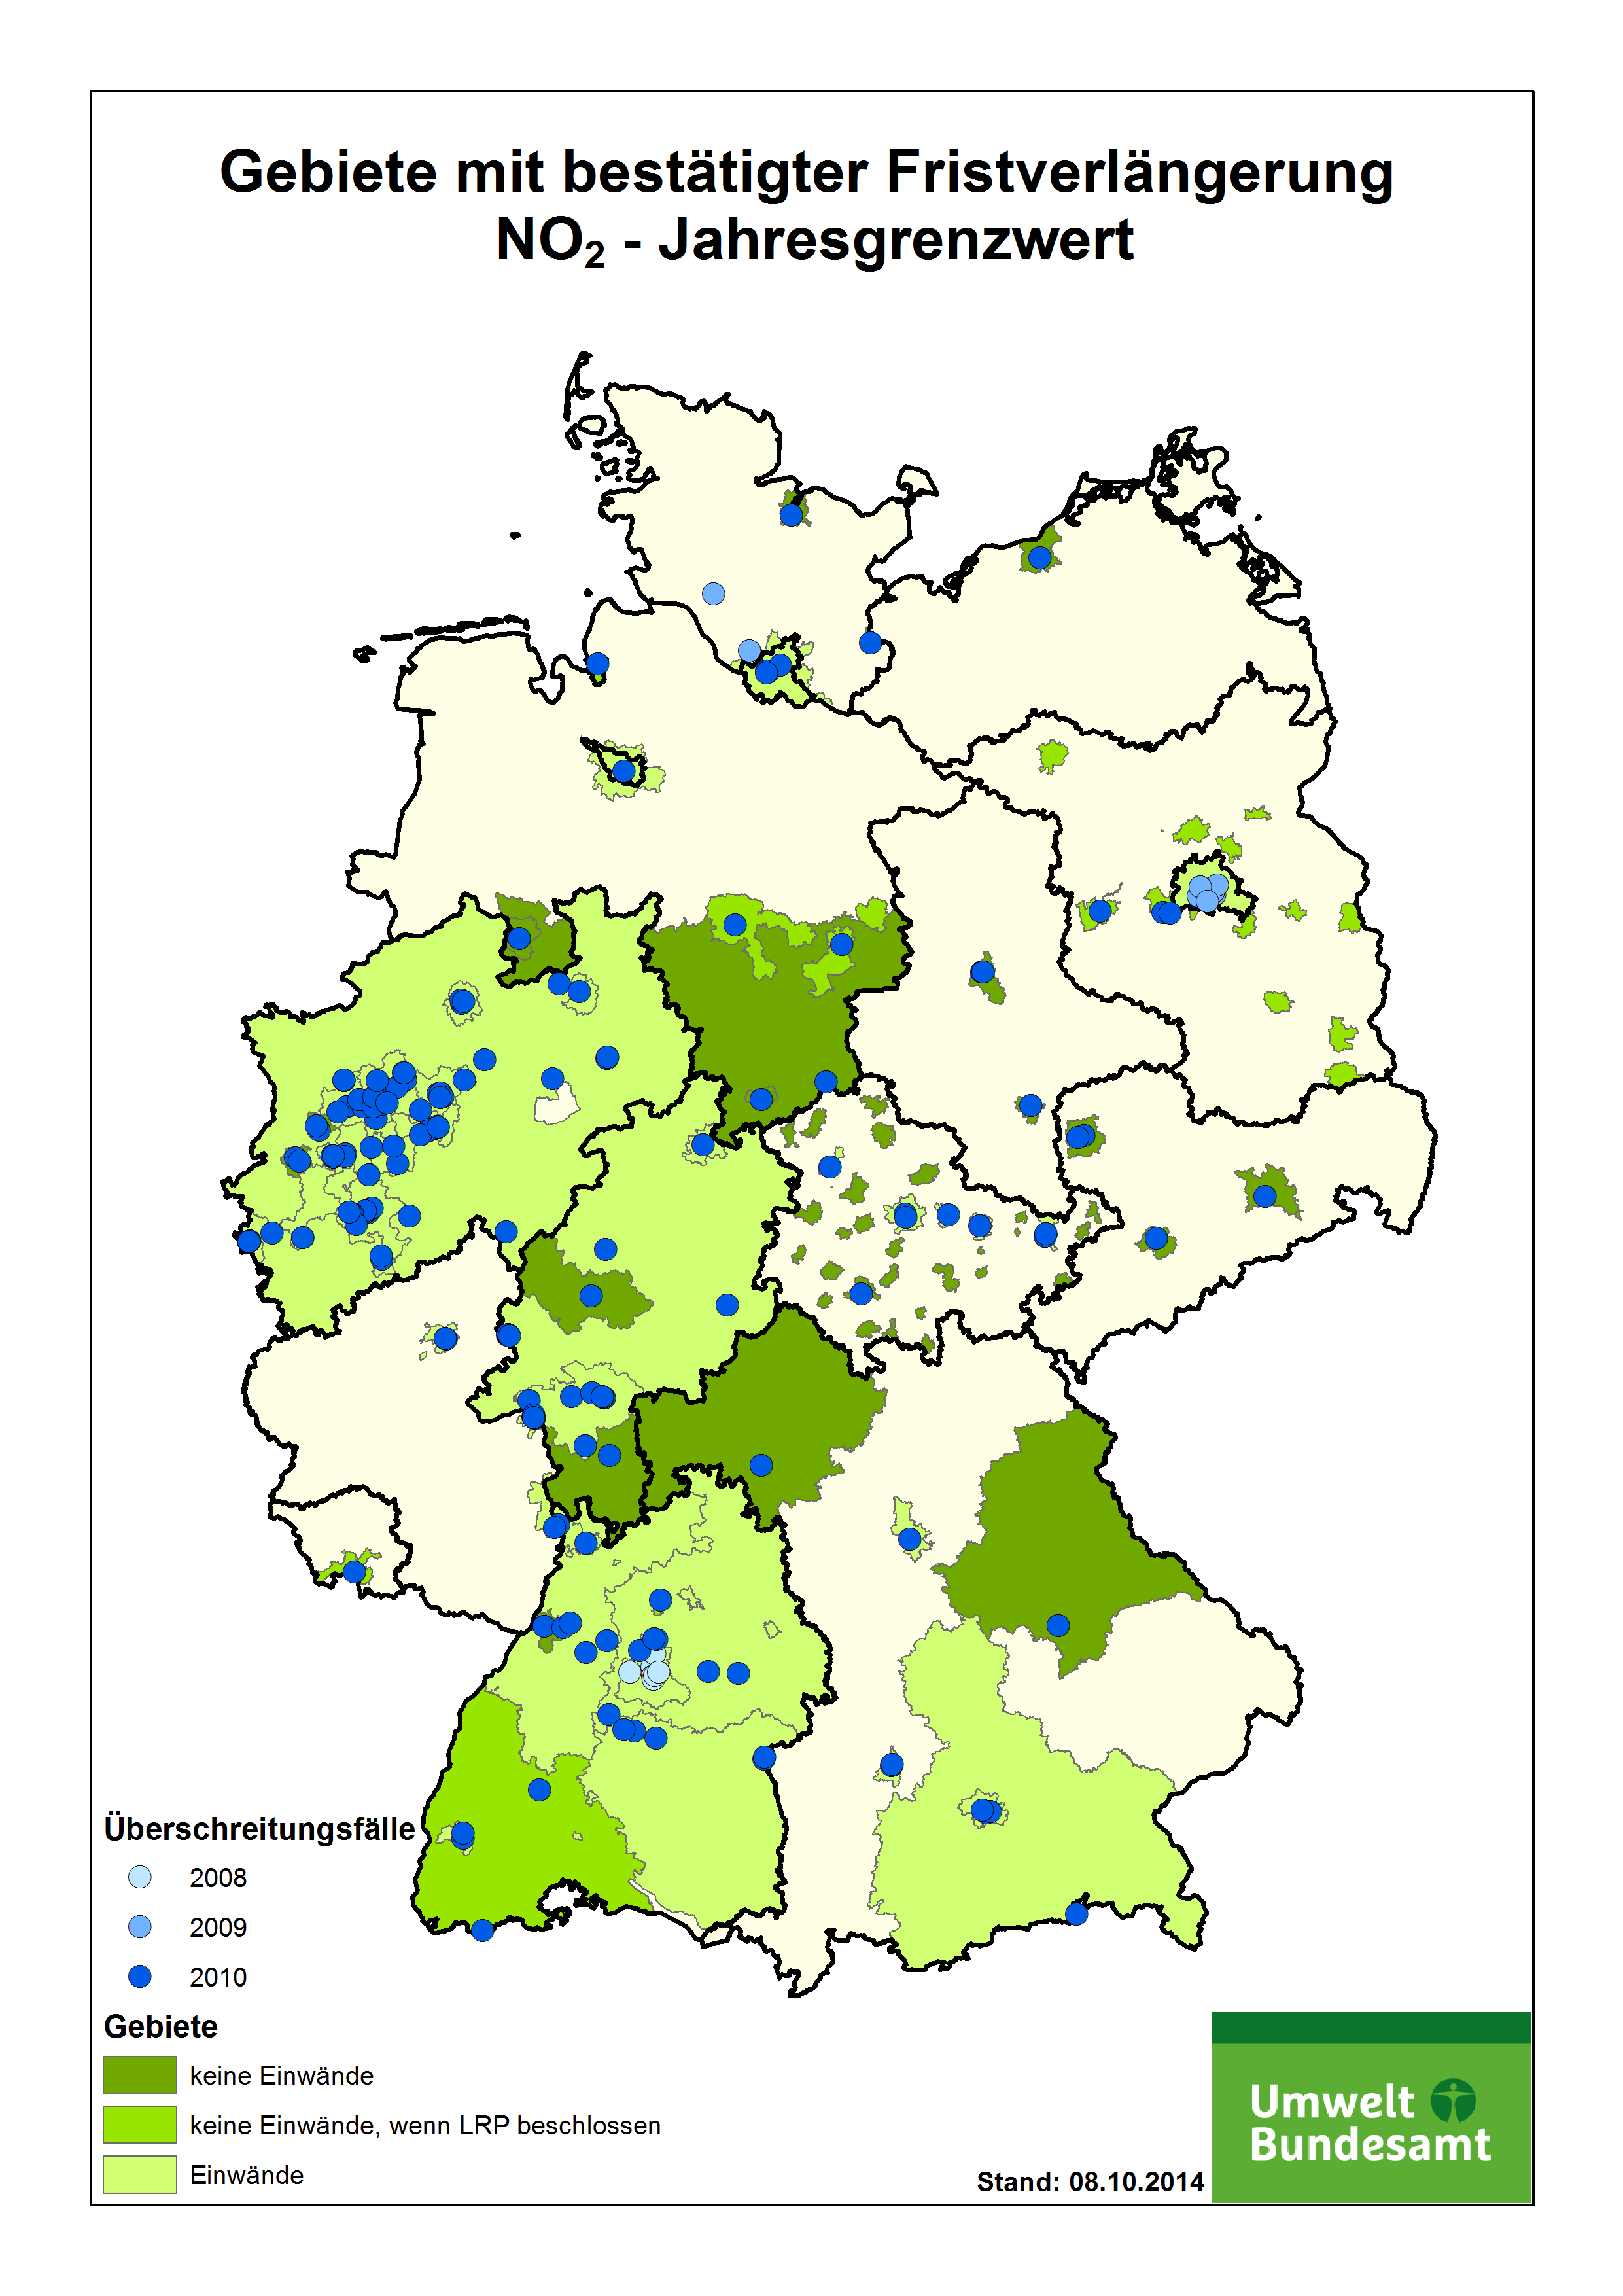 Eine Deutschlandkarte zeigt die Gebiete, die eine Fristverlängerung für den NO2-Jahresgrenzwert beantragt haben